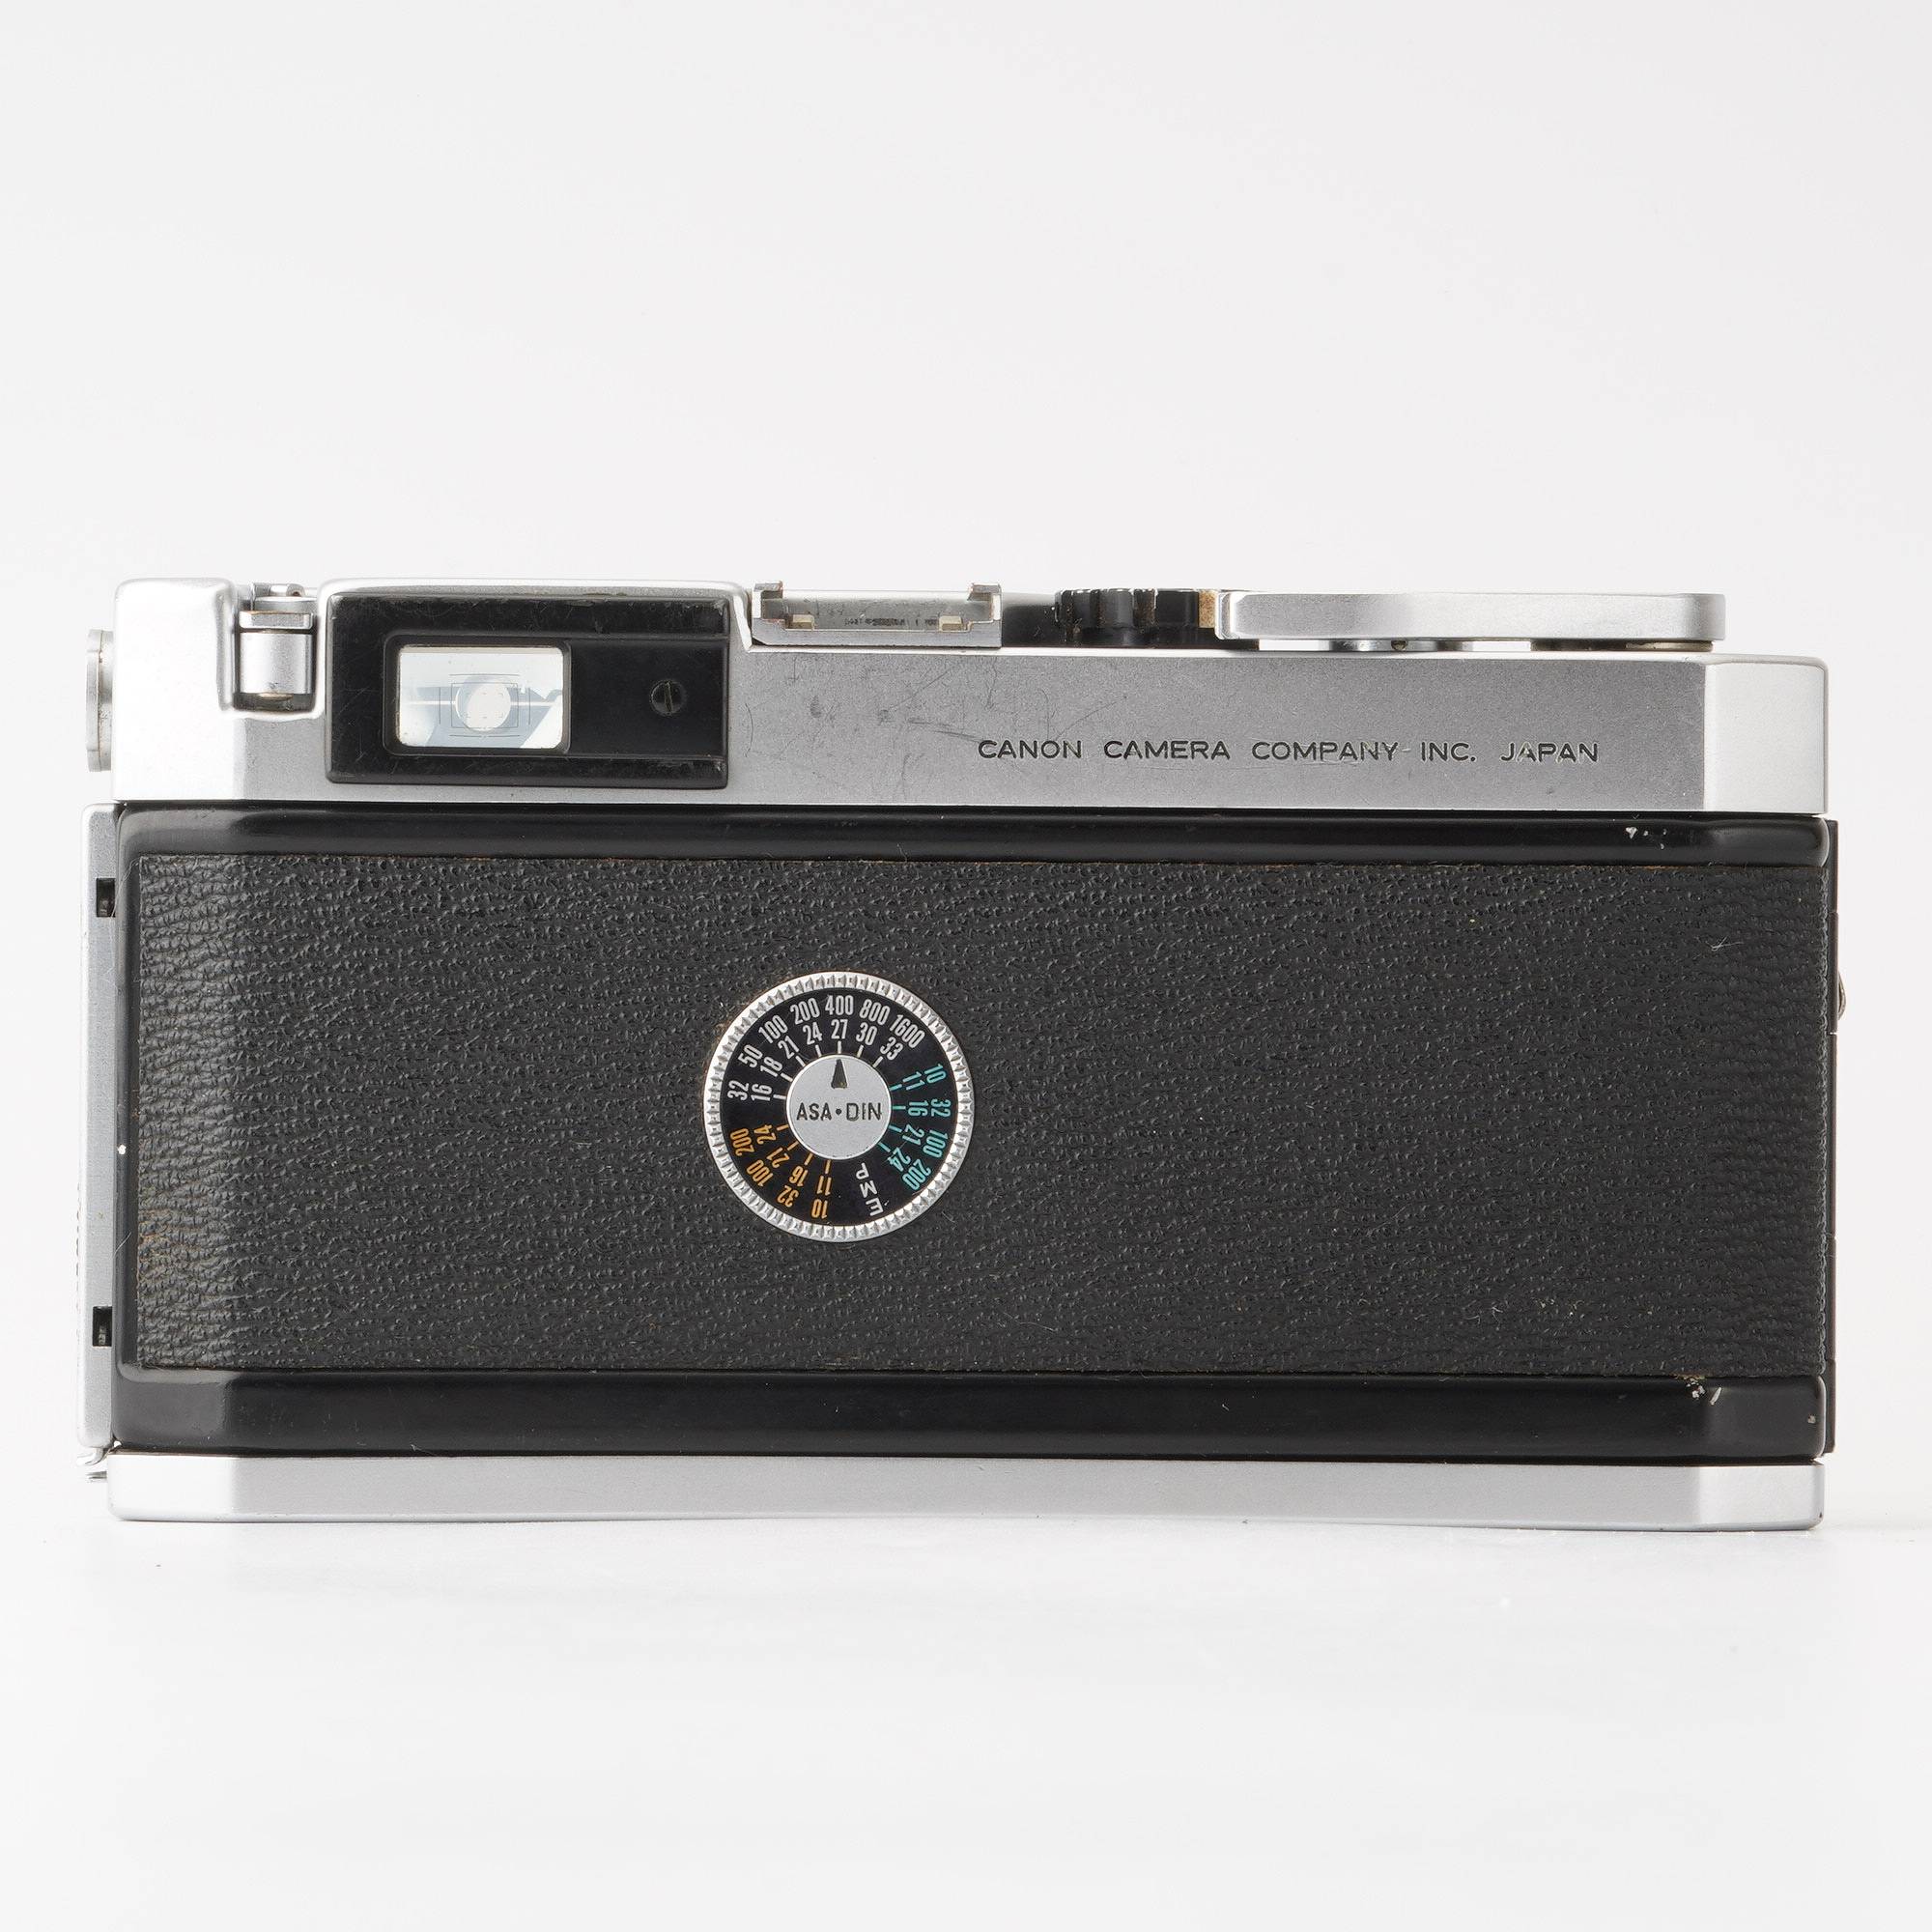 キヤノン ポピュレール Canon P 標準レンズ付き - カメラ、光学機器